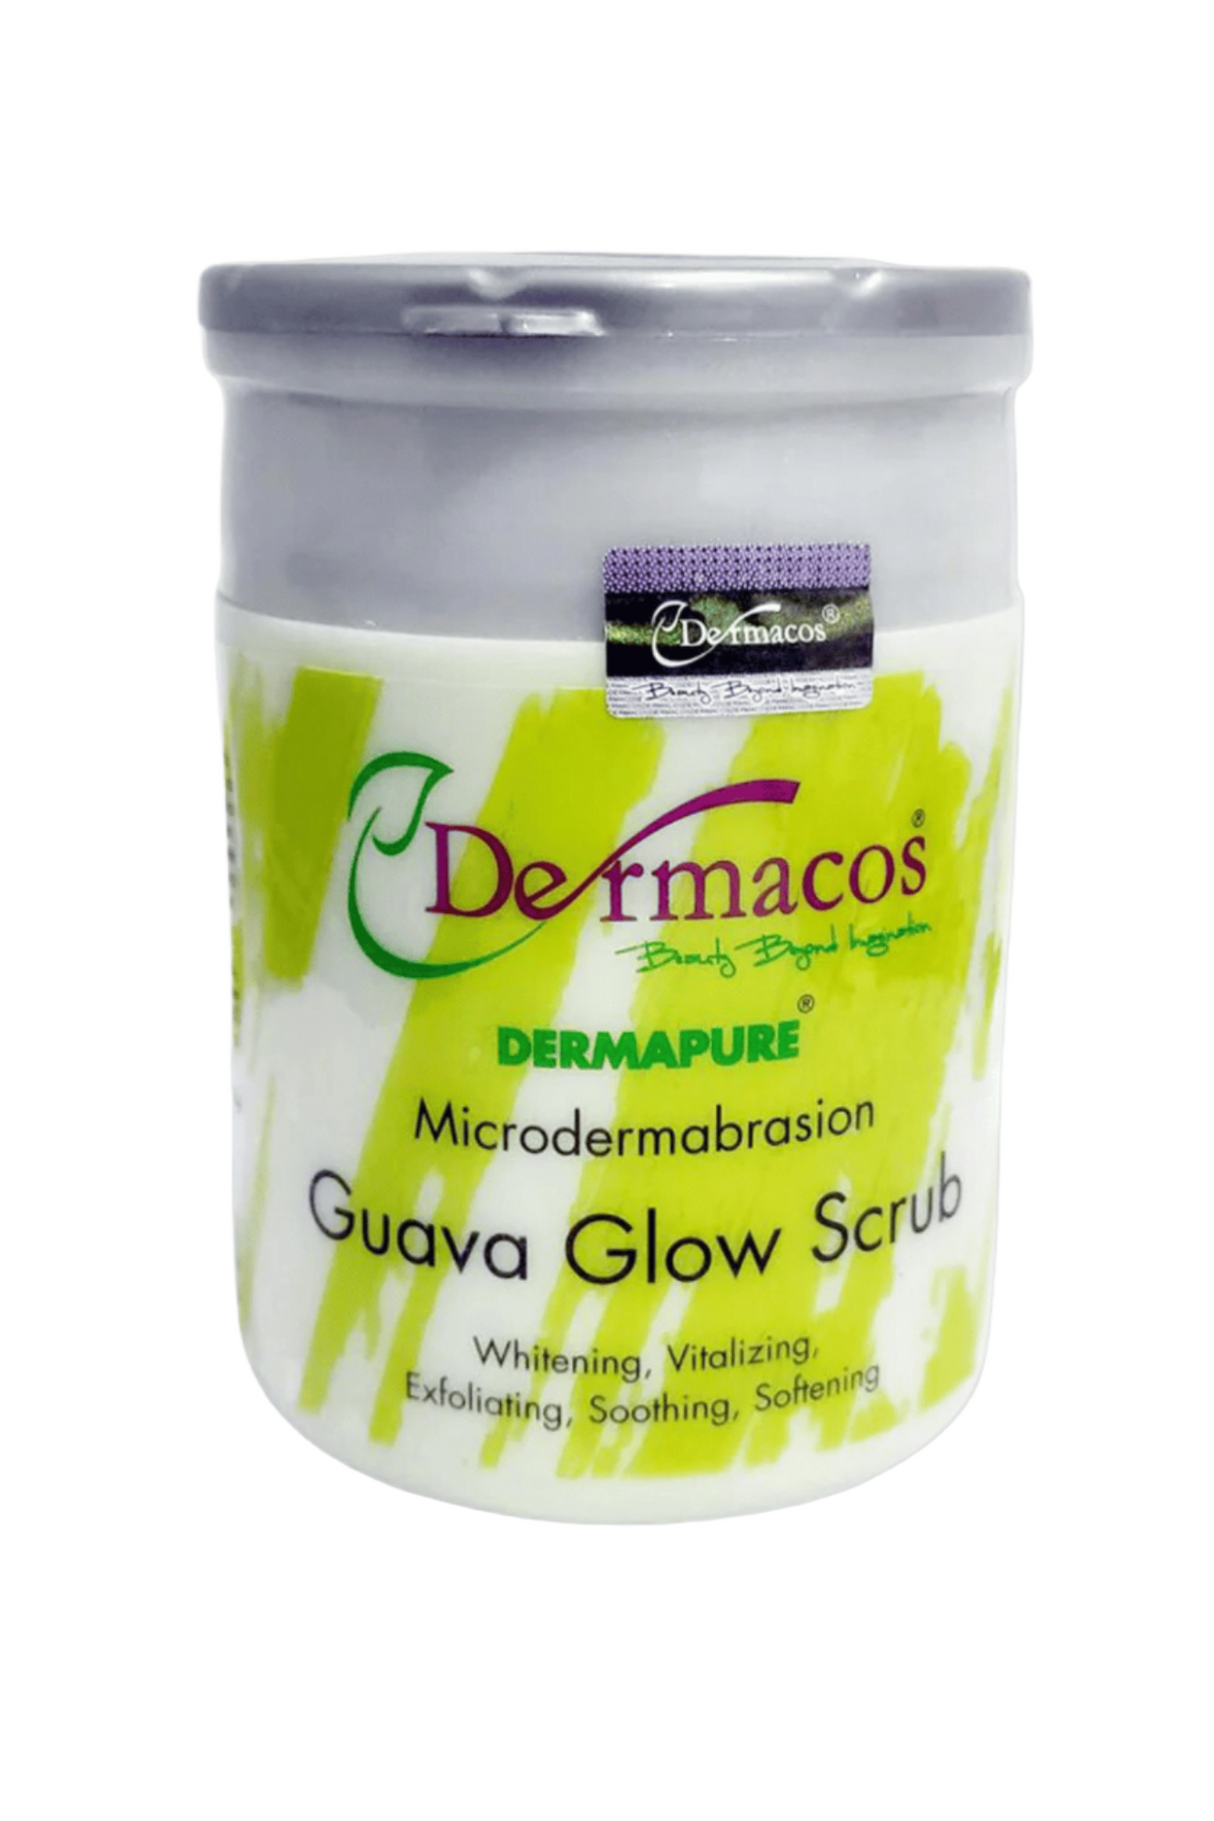 dermacos guava glow scrub 200g